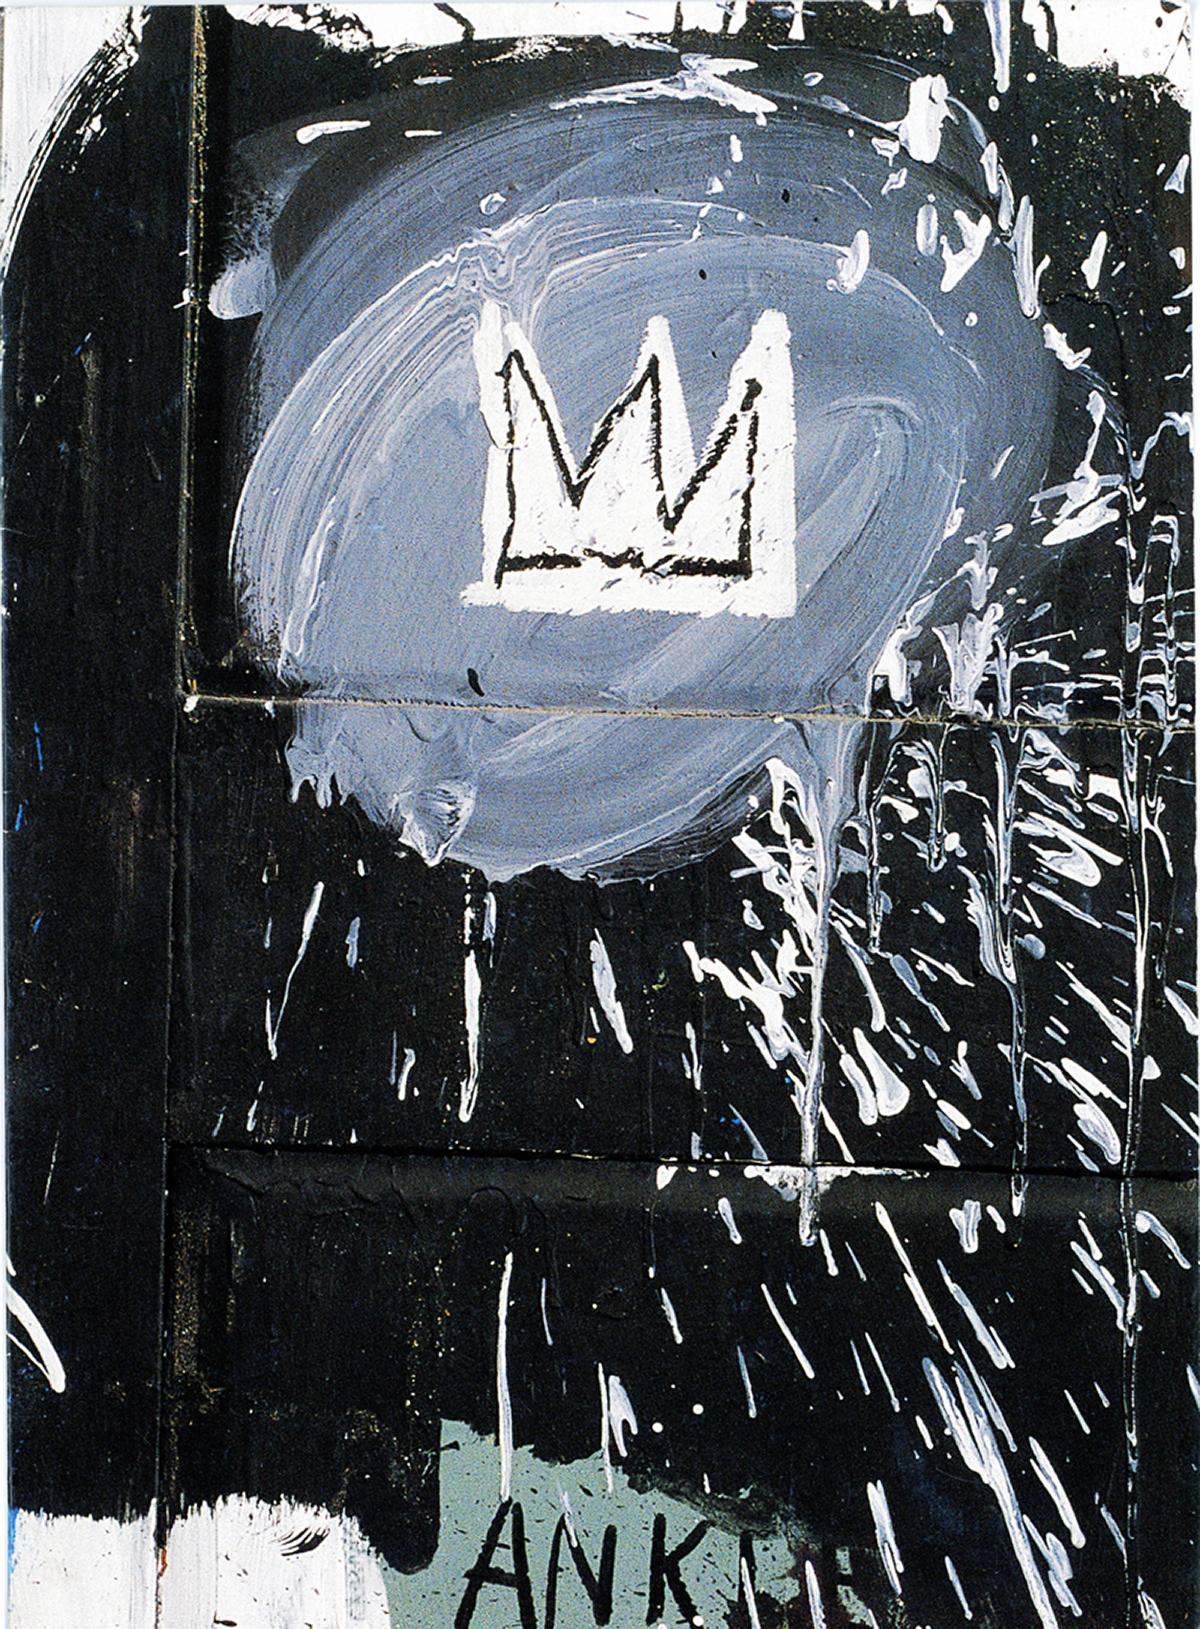 Basquiat Paris 1998 (vintage Basquiat announcement)  - Print by after Jean-Michel Basquiat